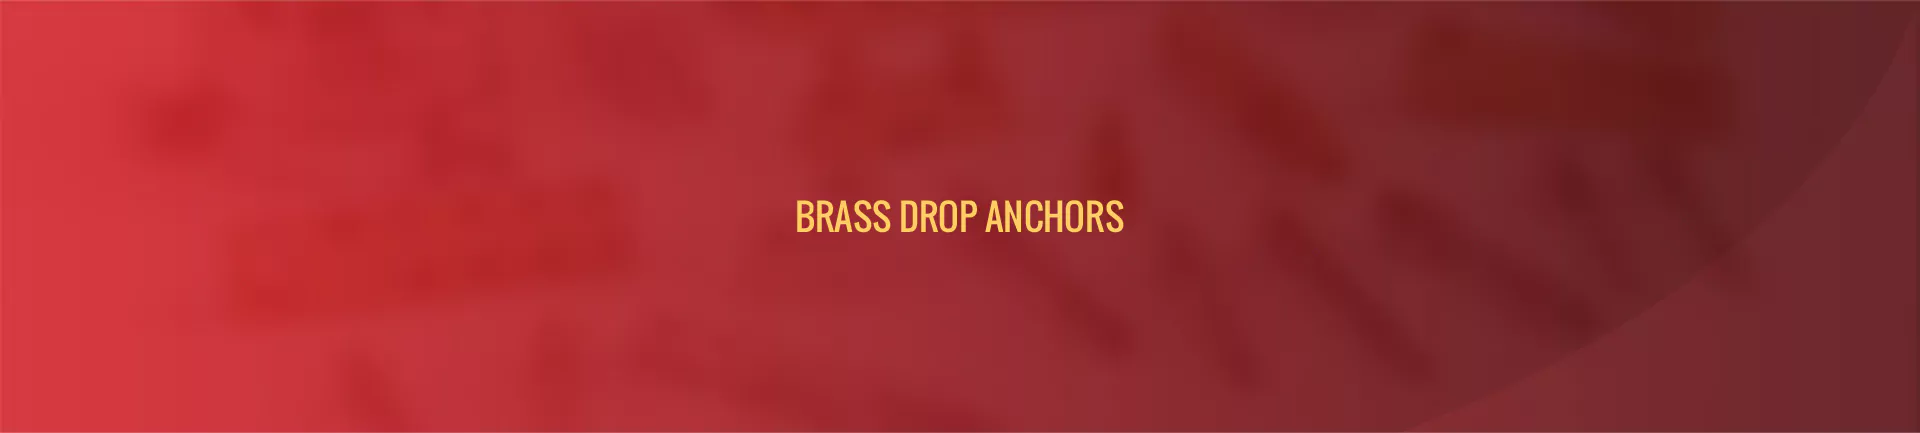 brass-drop-anchors-banner